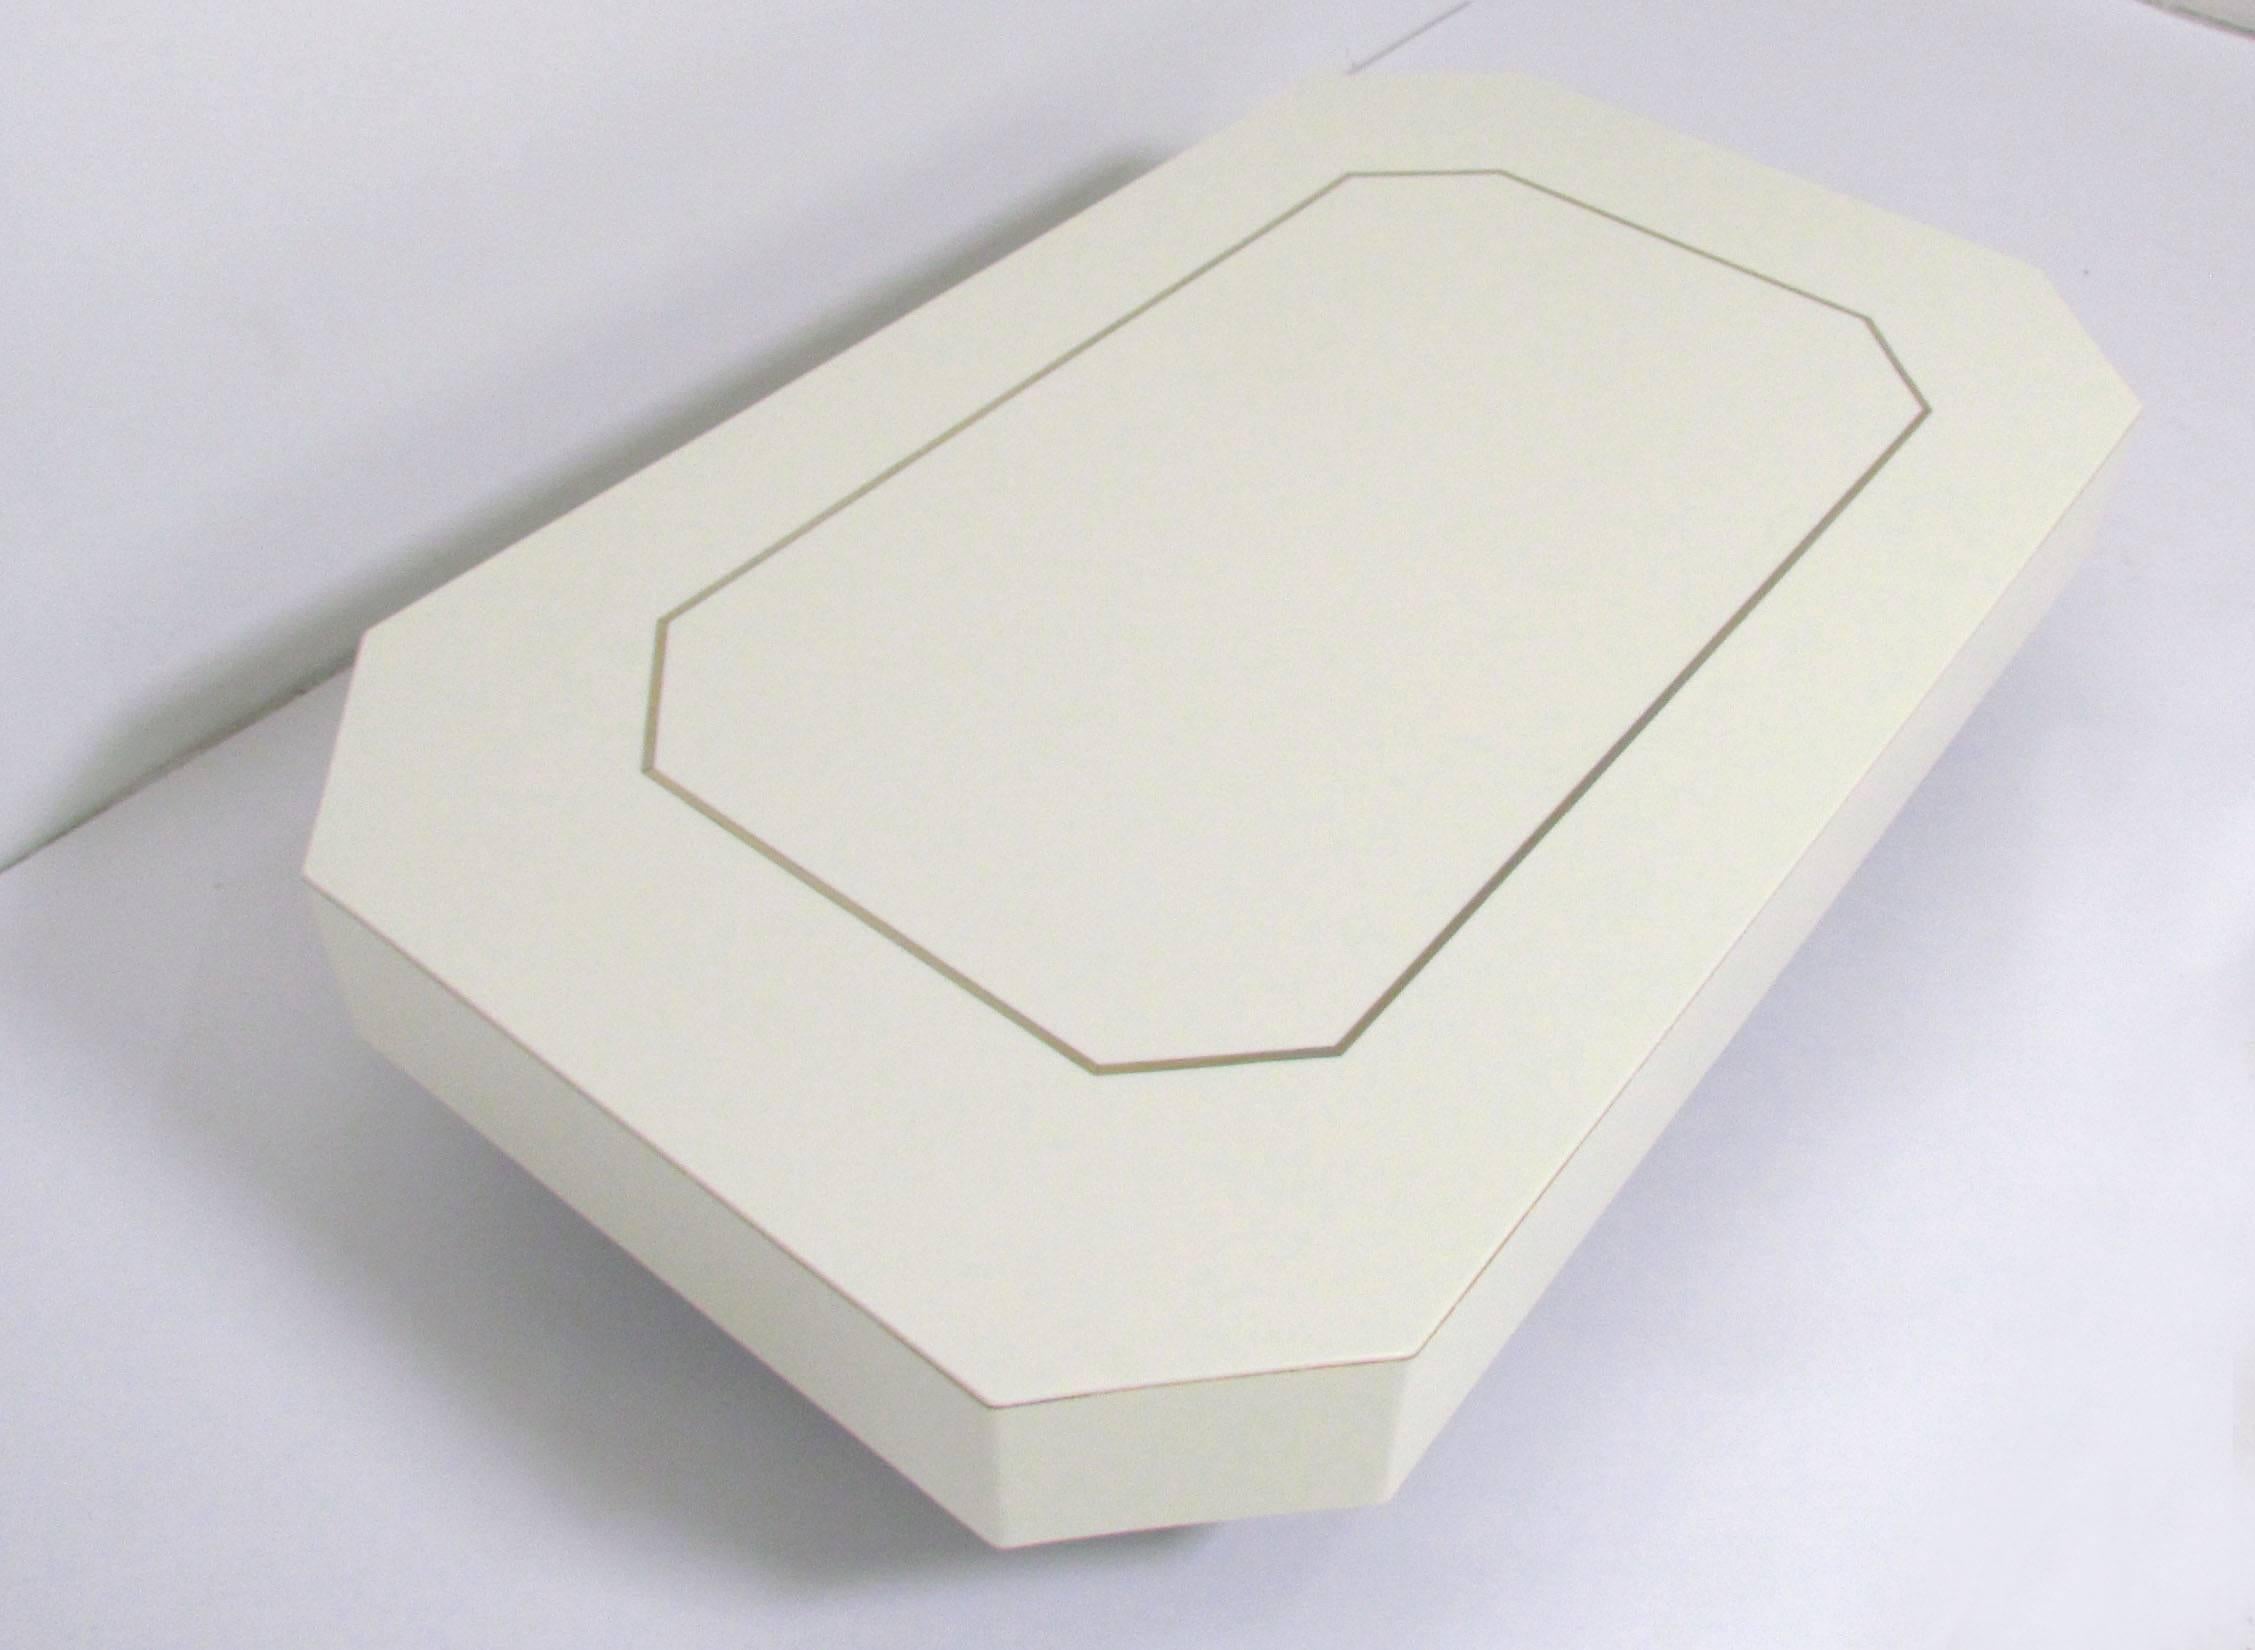 Table basse avec base encastrée qui donne au plateau l'apparence de flotter, forme octogonale en acrylique avec une garniture incrustée de laiton, vers les années 1970.